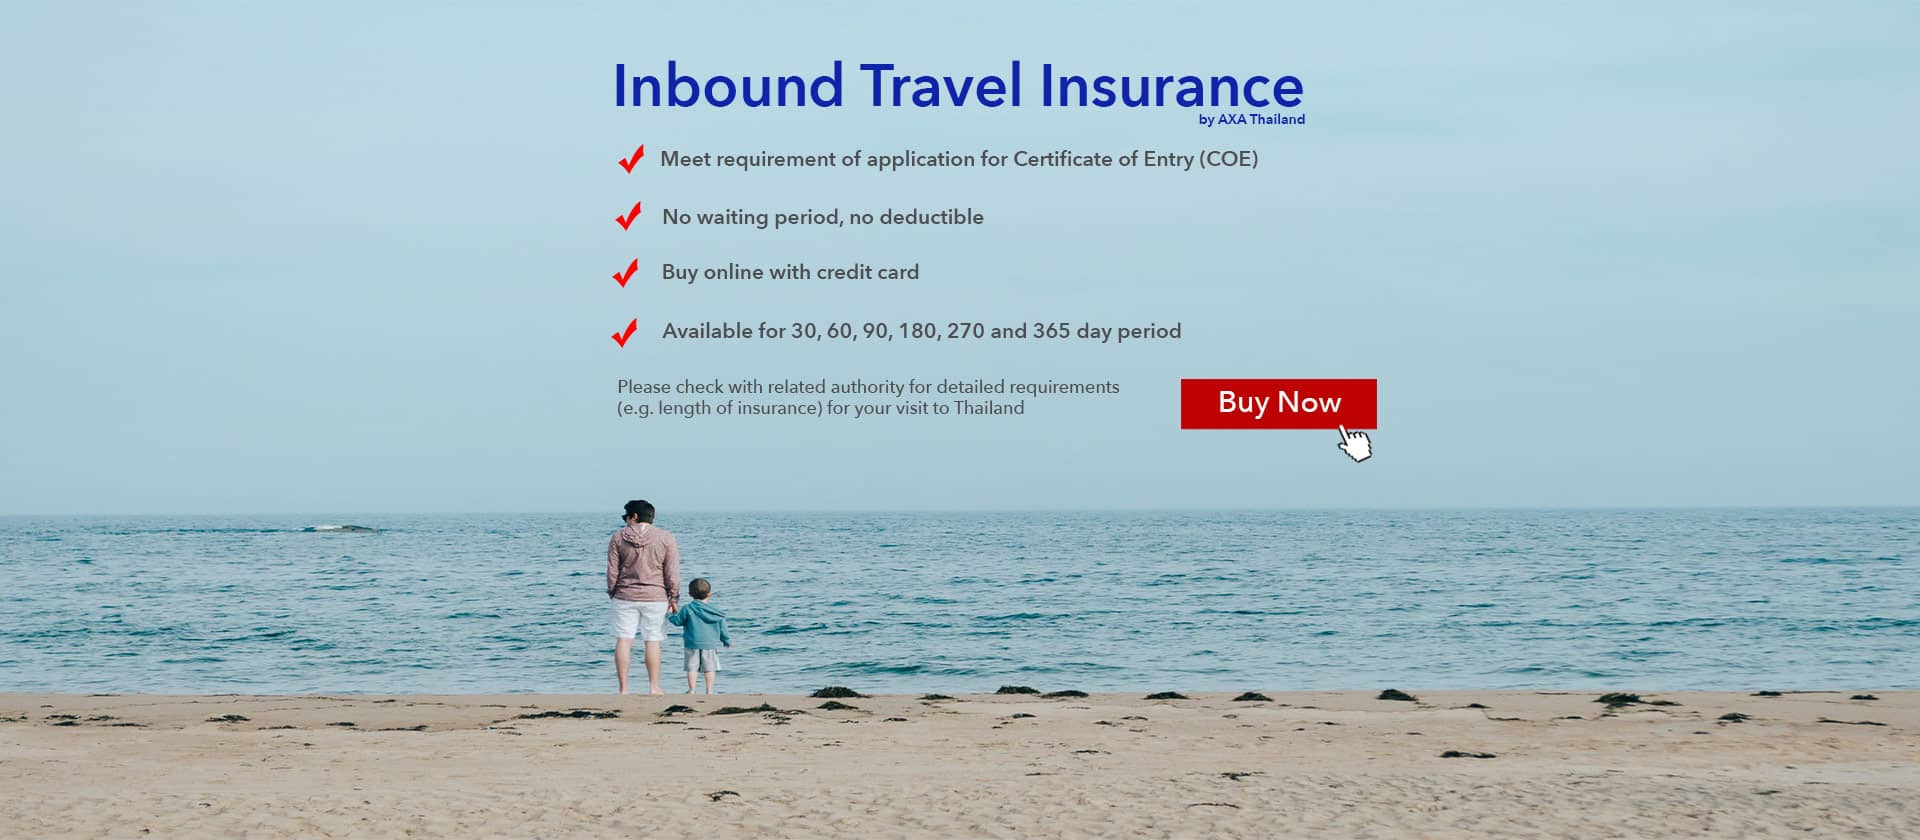 nz inbound travel insurance